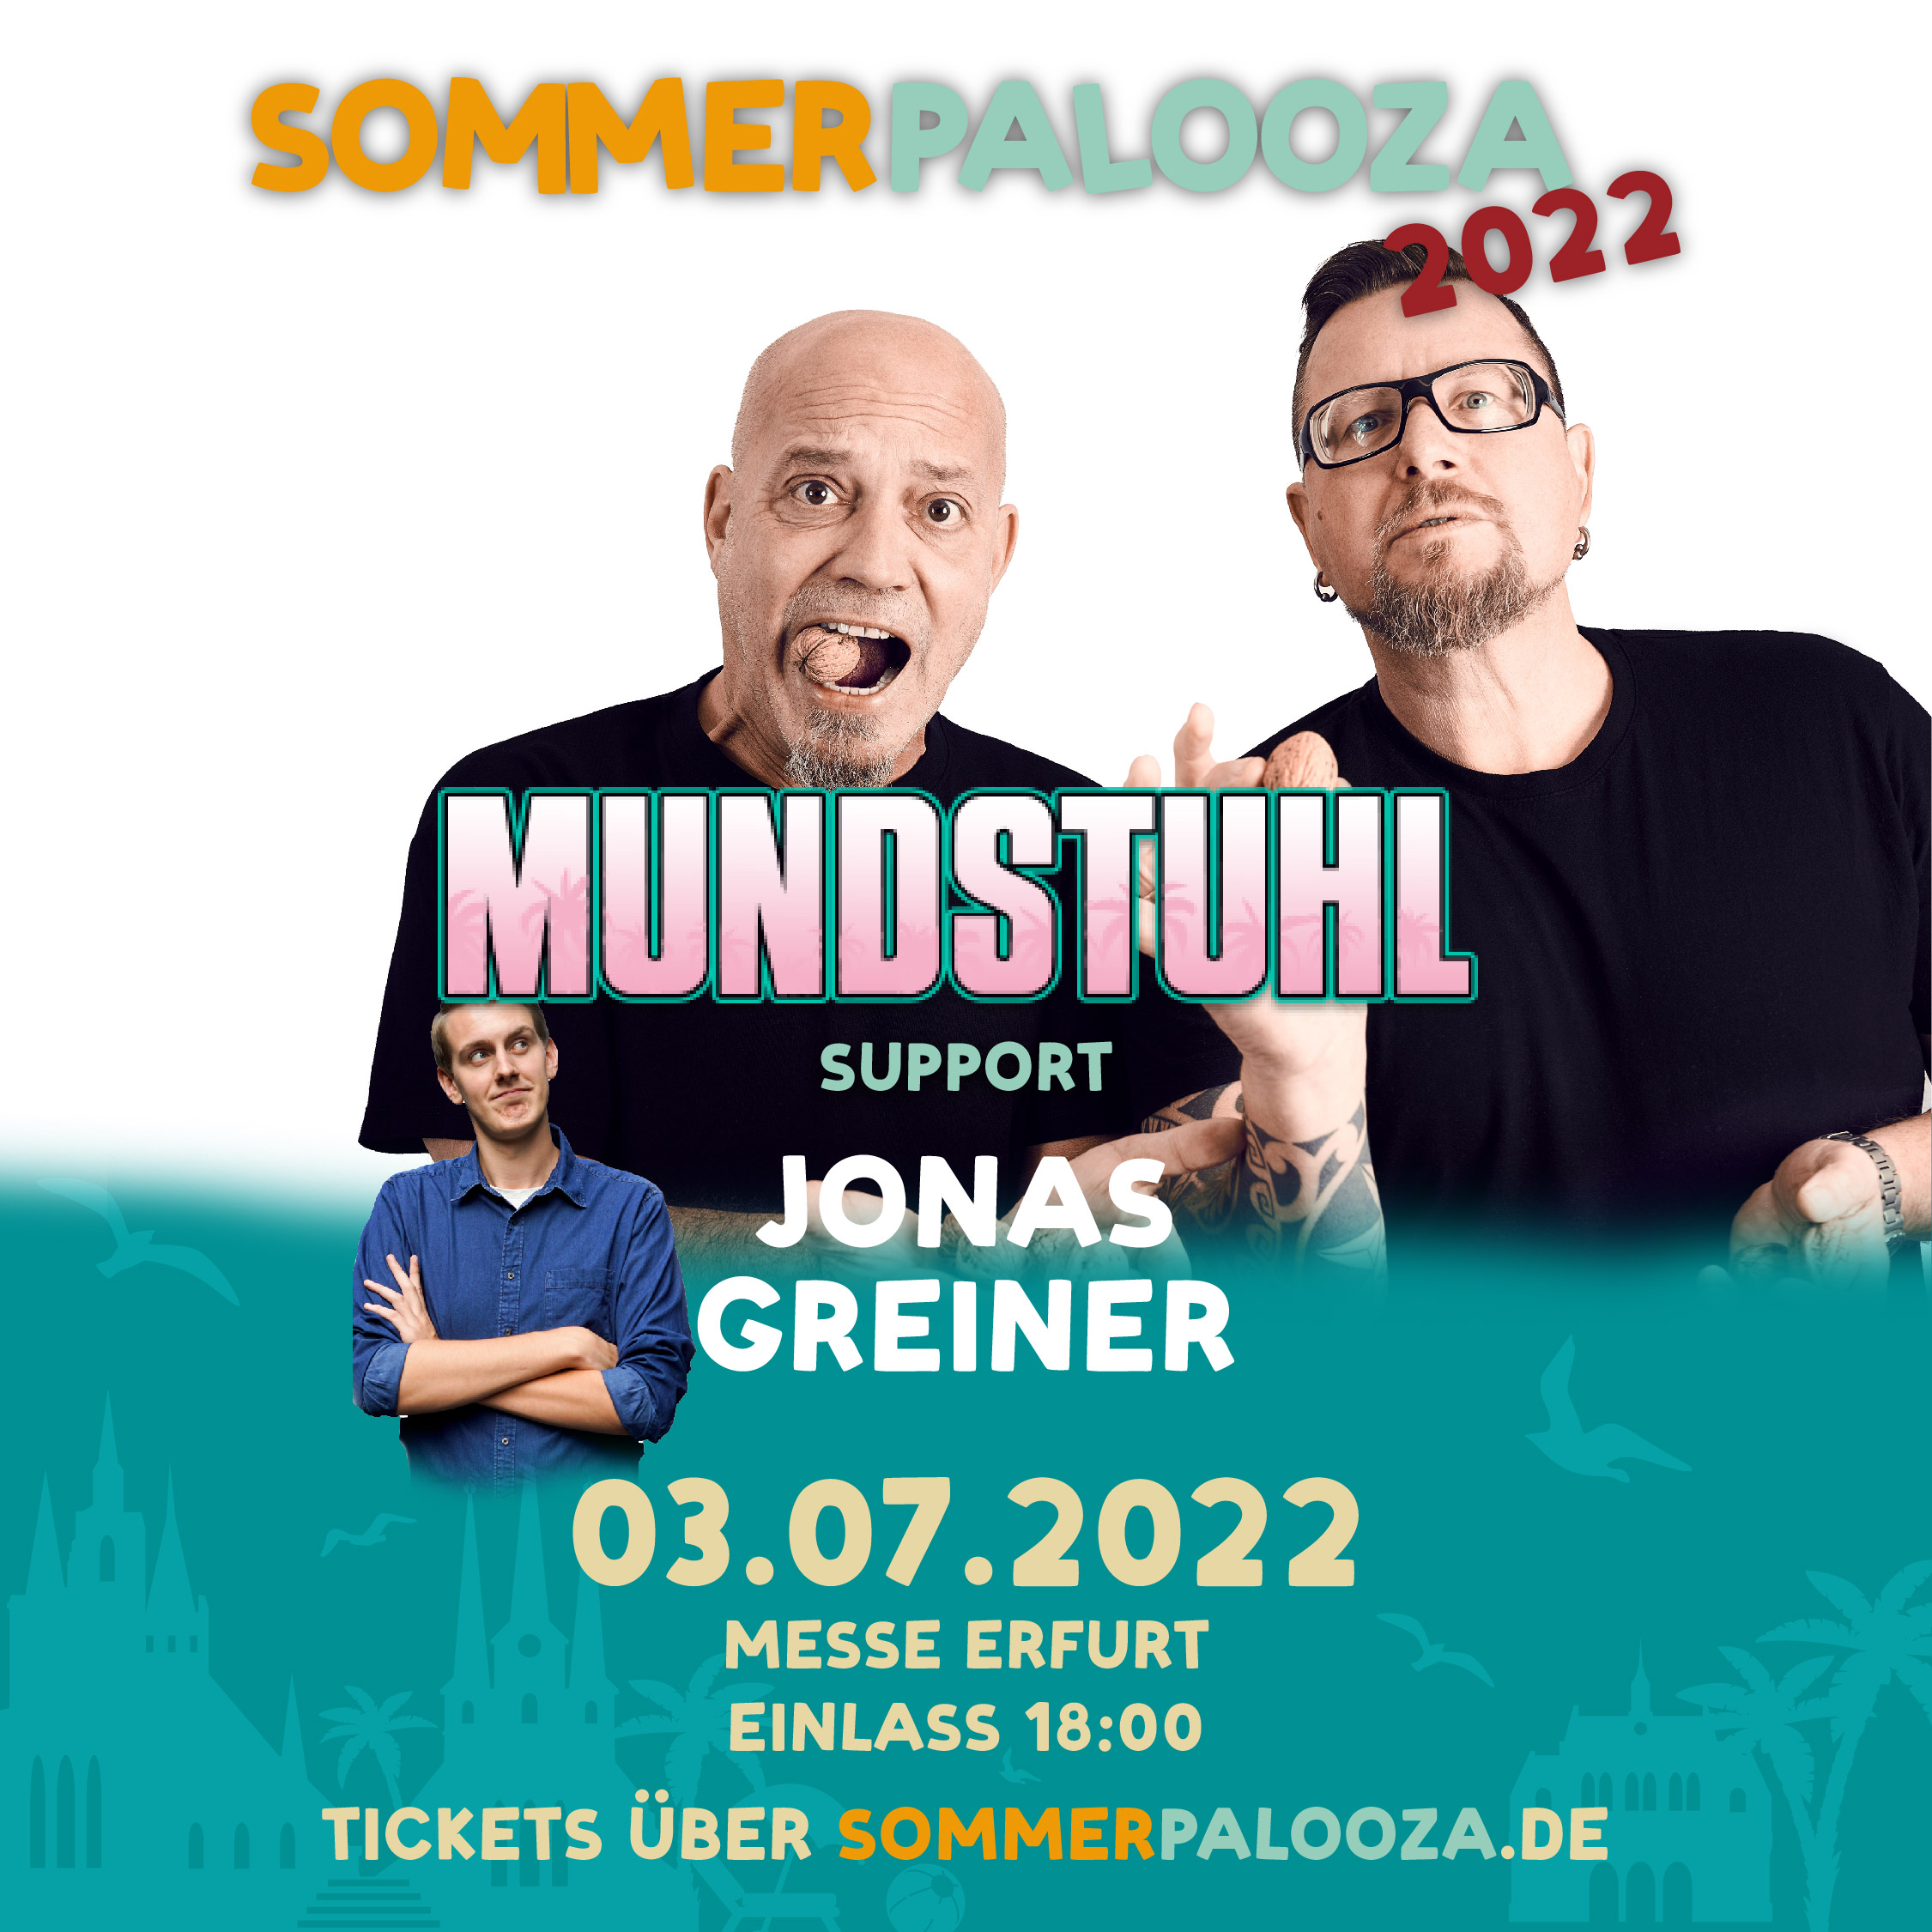 Mundstuhl Jonas  Greiner Sommerpalooza 2022 Festival